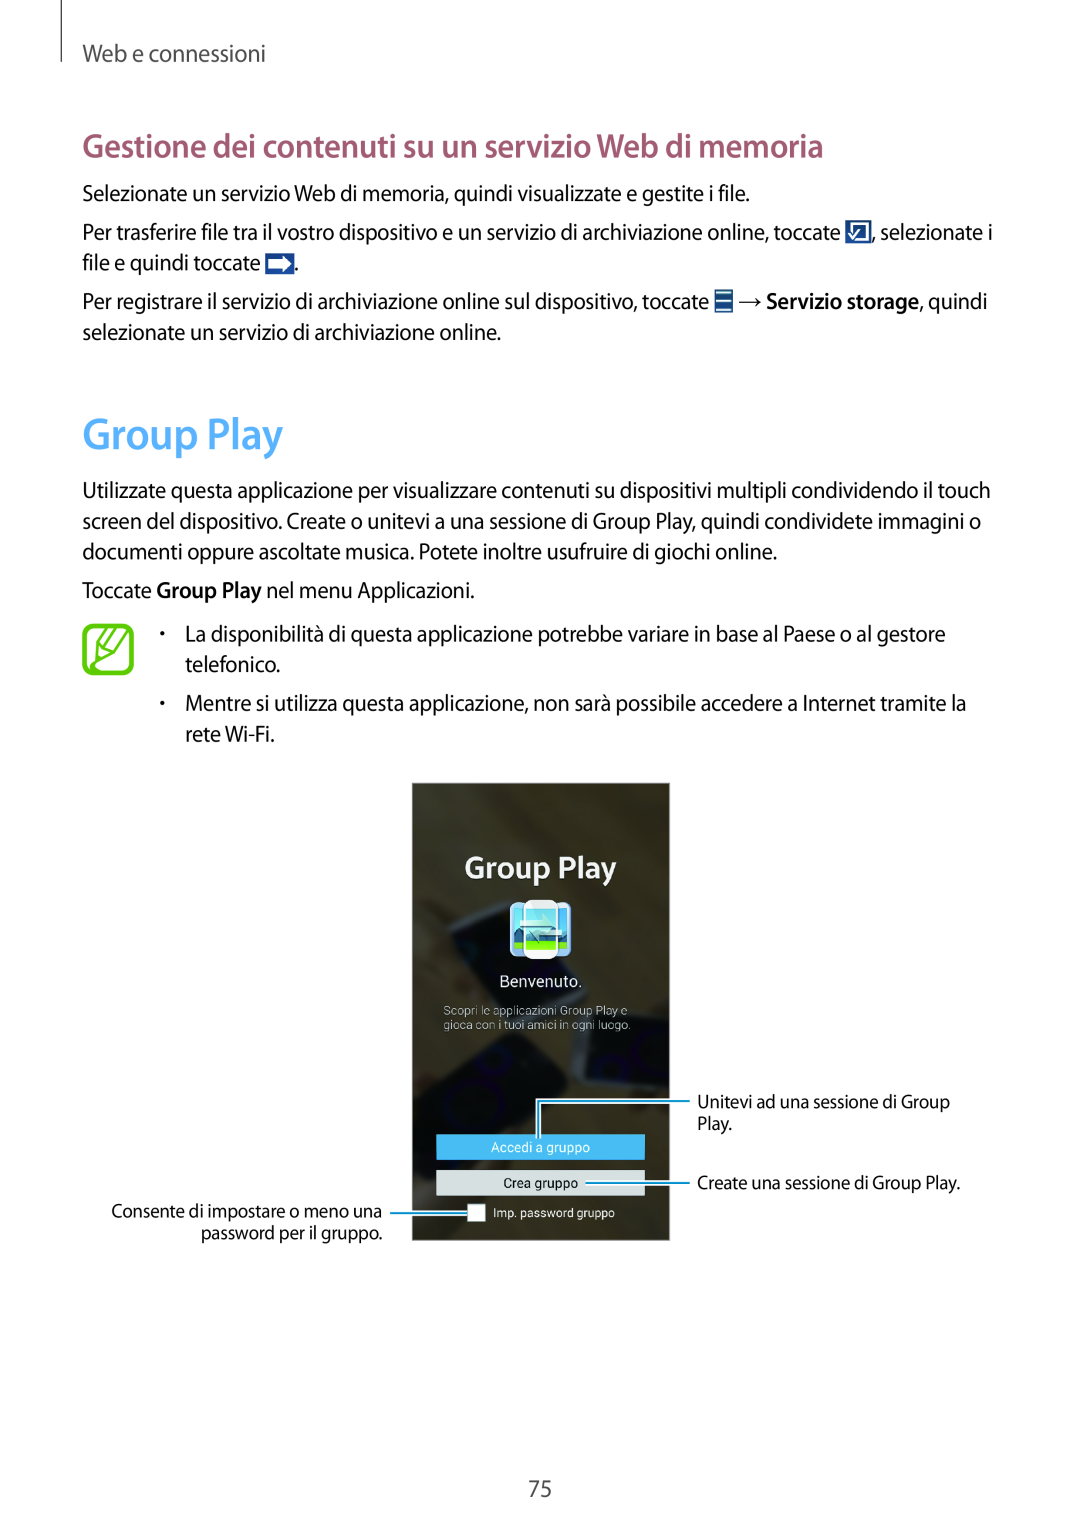 Samsung GT-N7100VSDOMN, GT-N7100ZRDTUR Group Play, Gestione dei contenuti su un servizio Web di memoria, Web e connessioni 